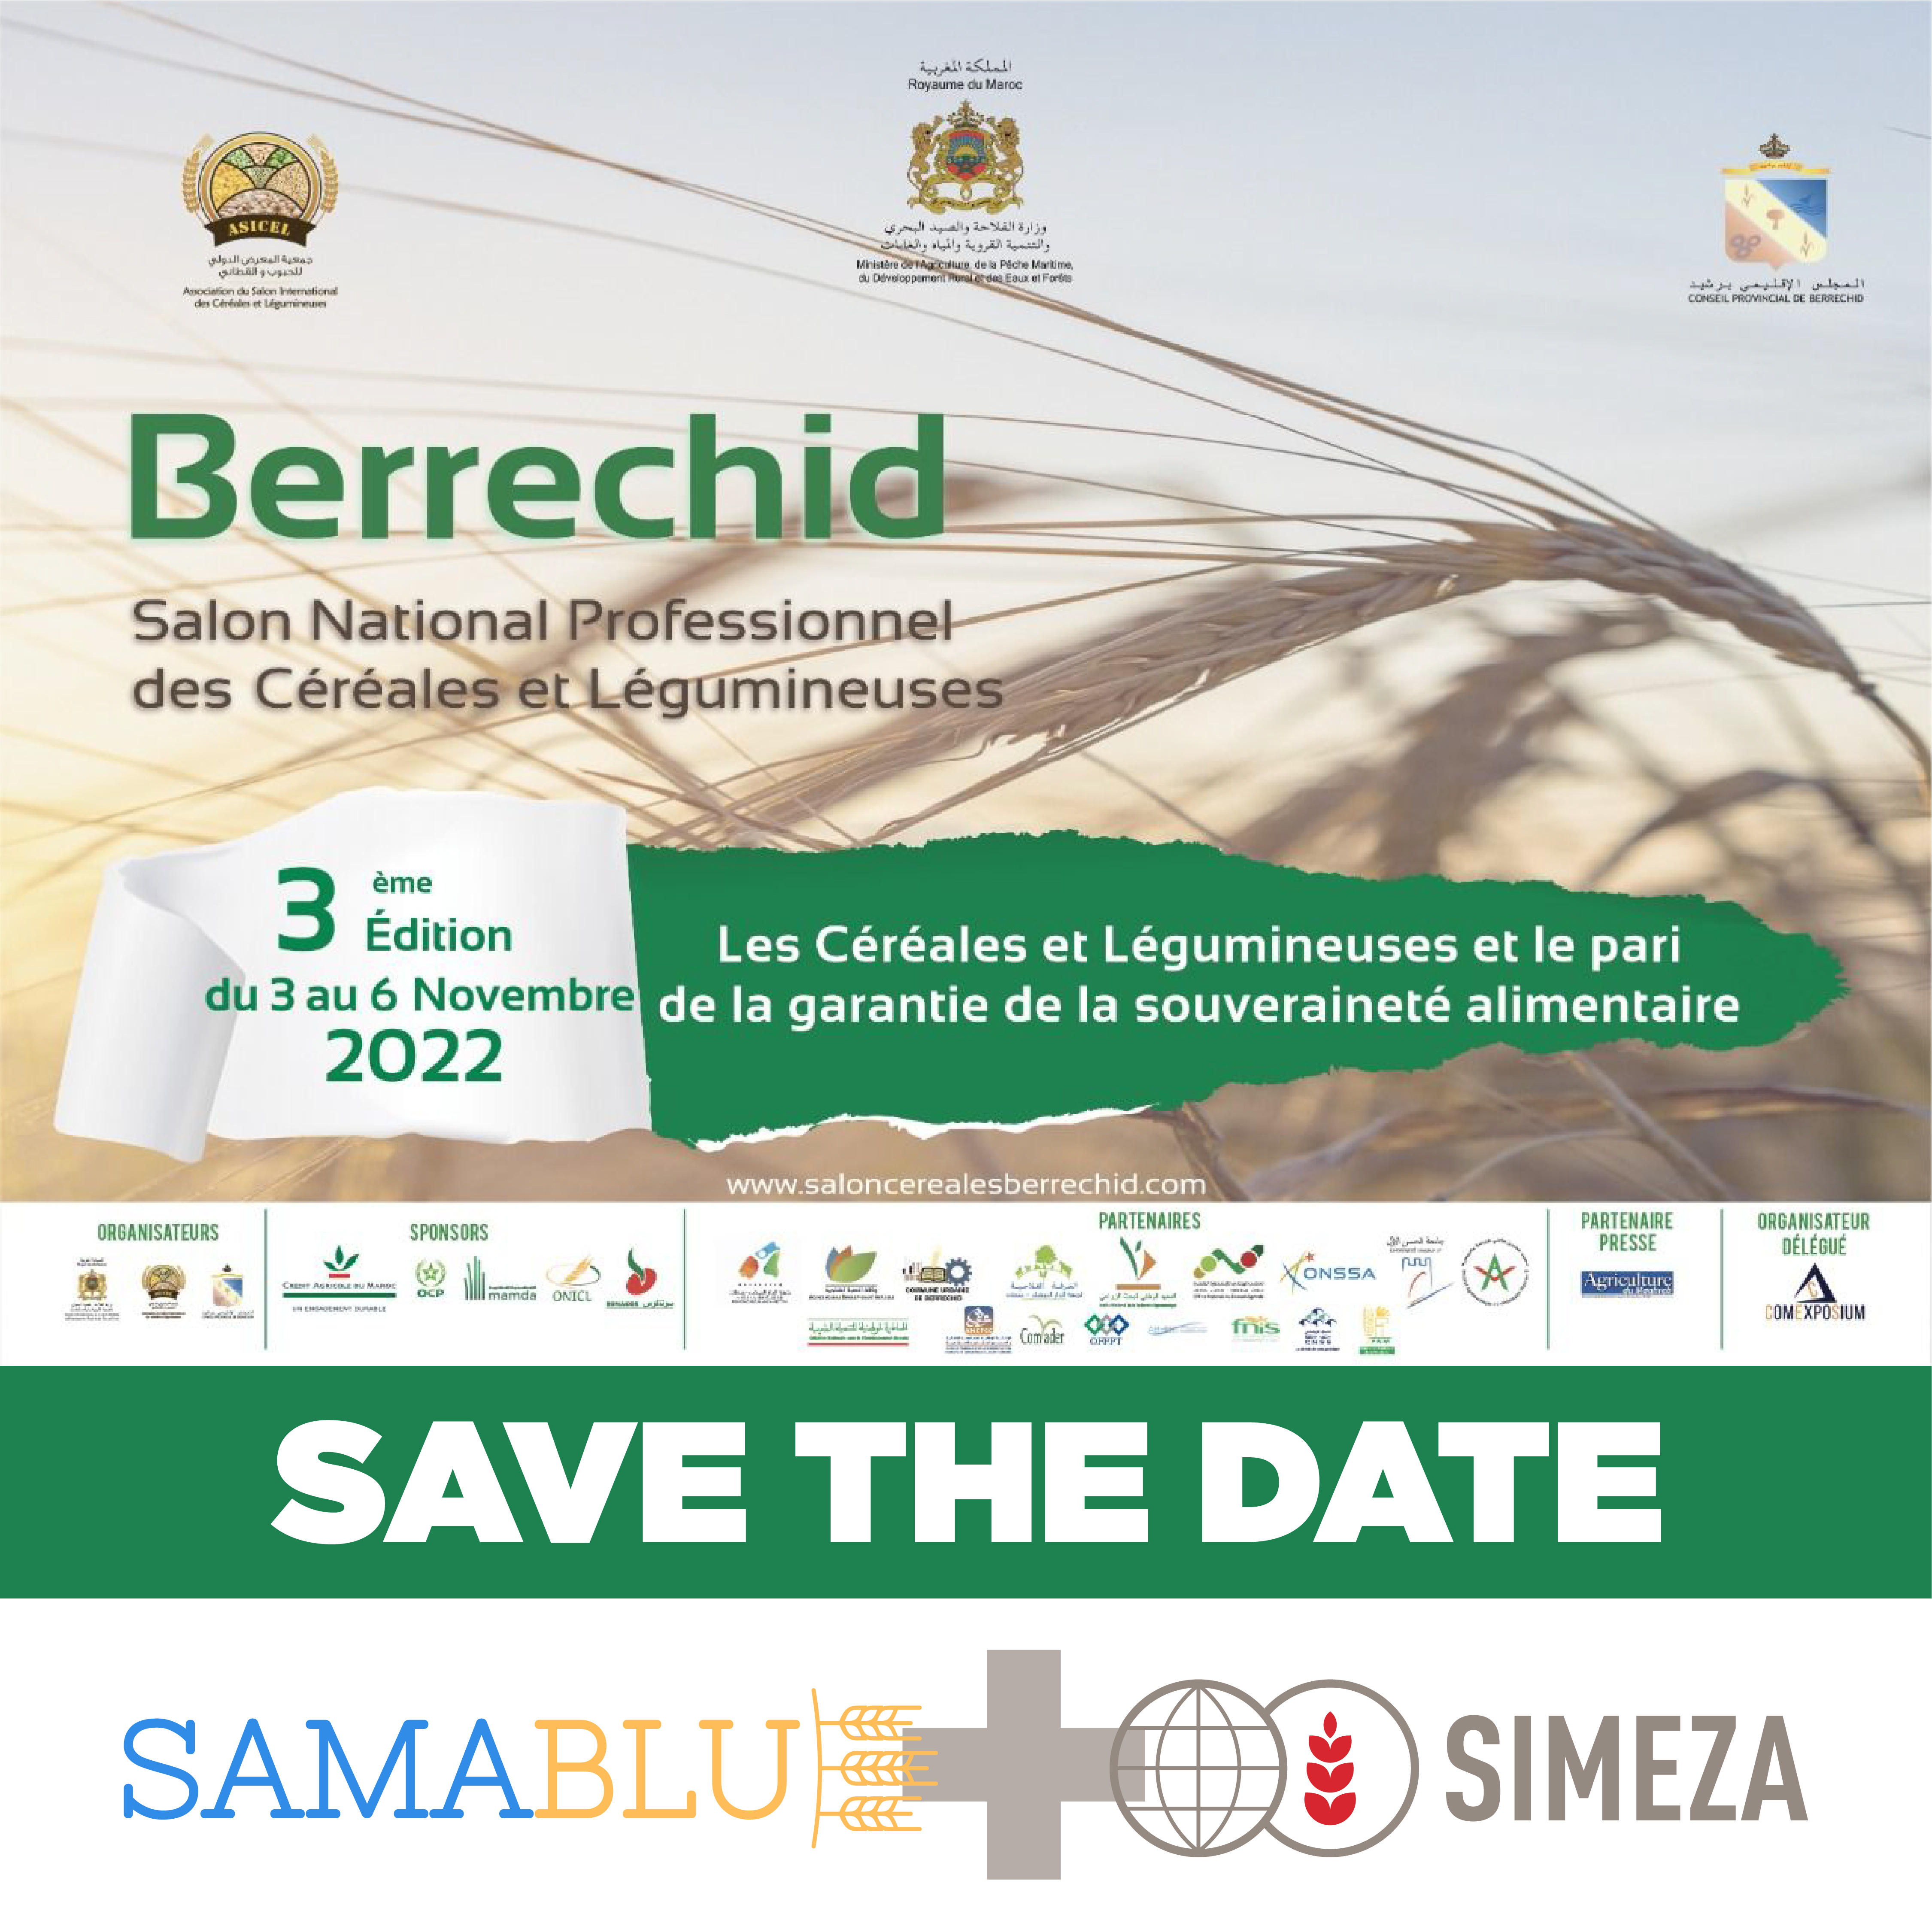 SIMEZA participará en la 3ª edición de Berrechid (Marruecos)